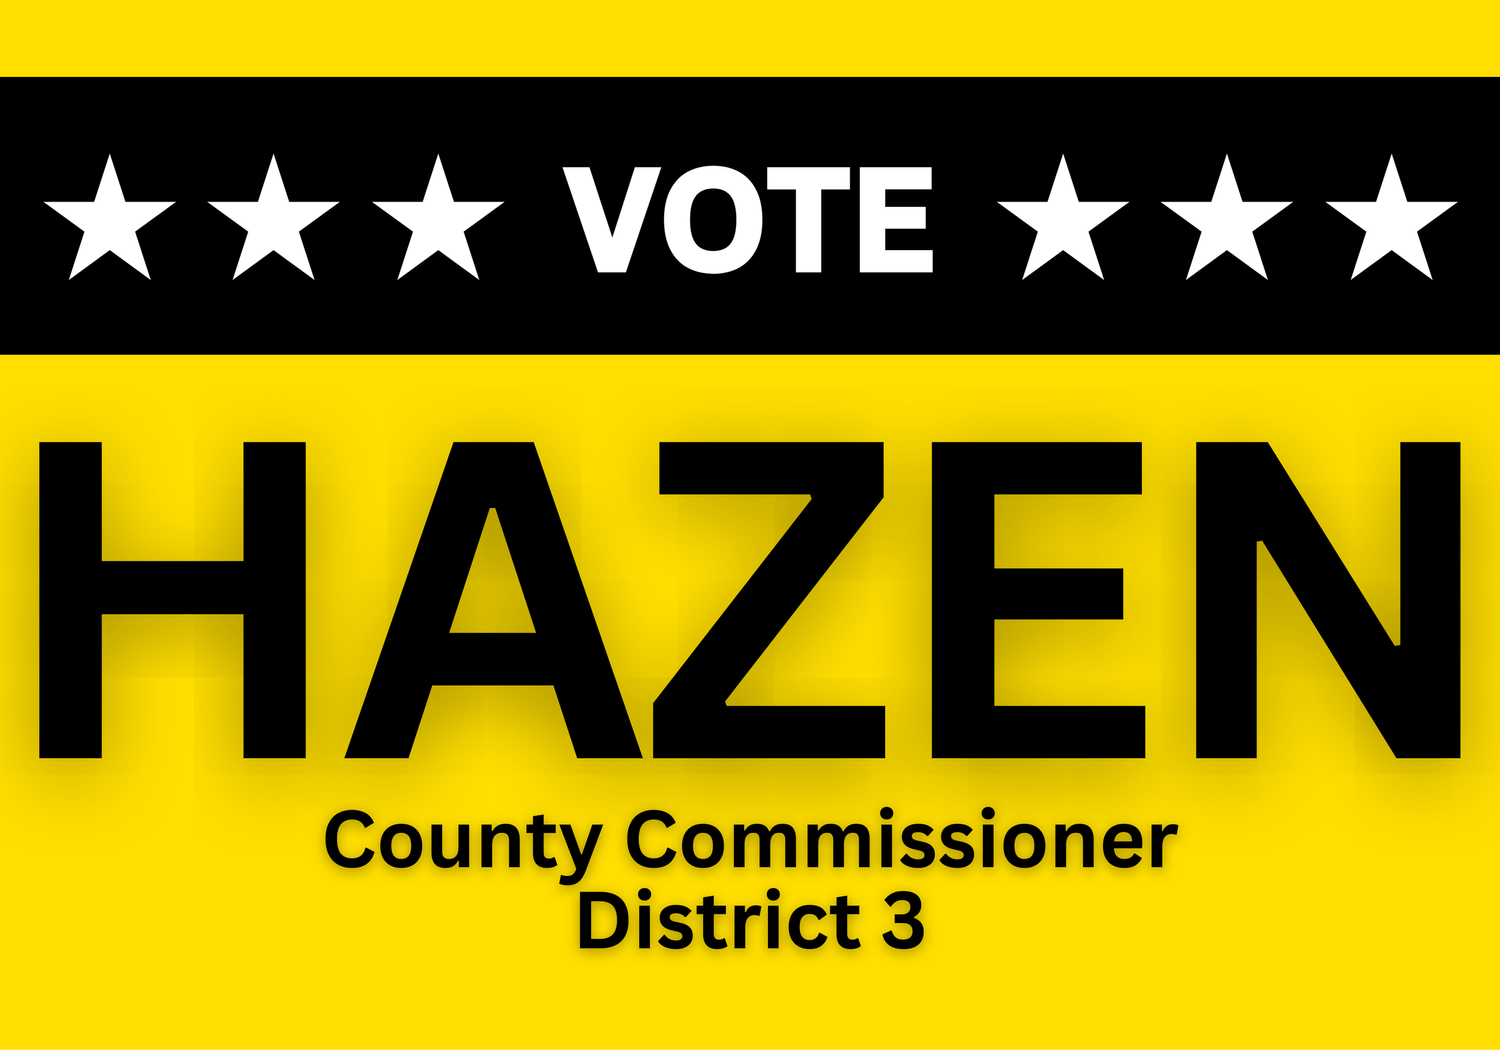 Tony Hazen for Commissioner